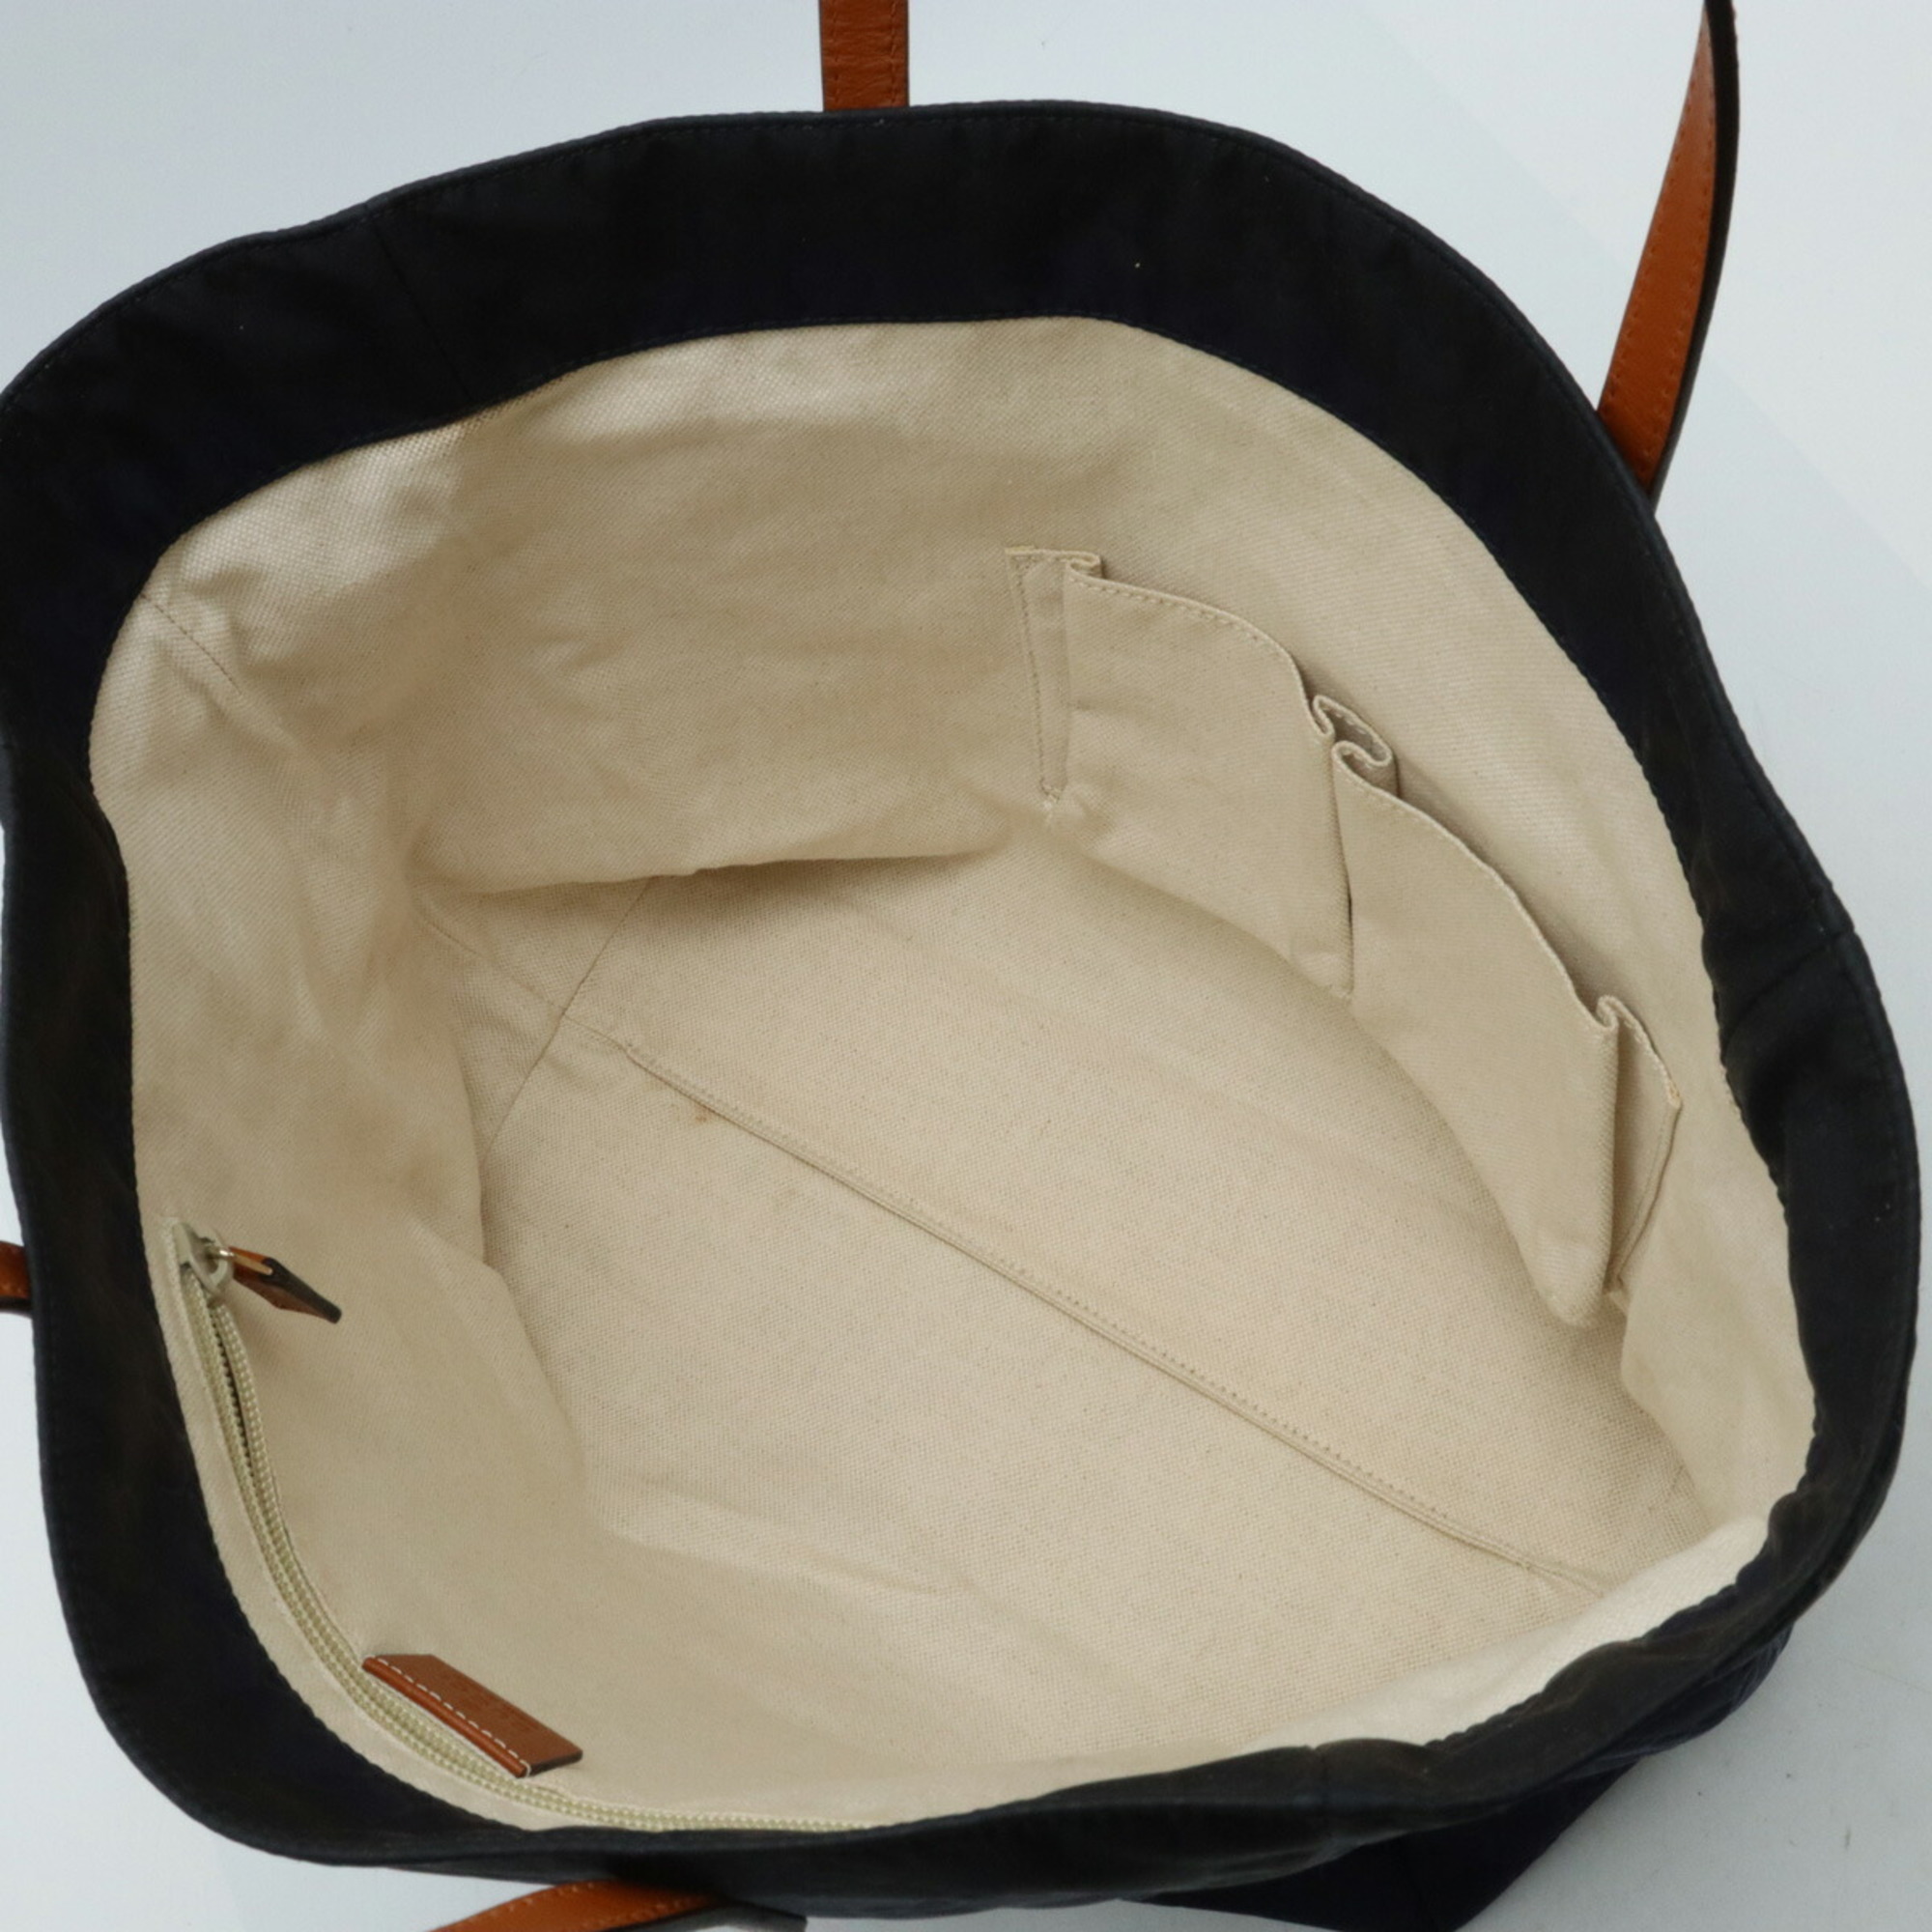 GUCCI GG Nylon Tote Bag Handbag Leather Navy Brown 282439